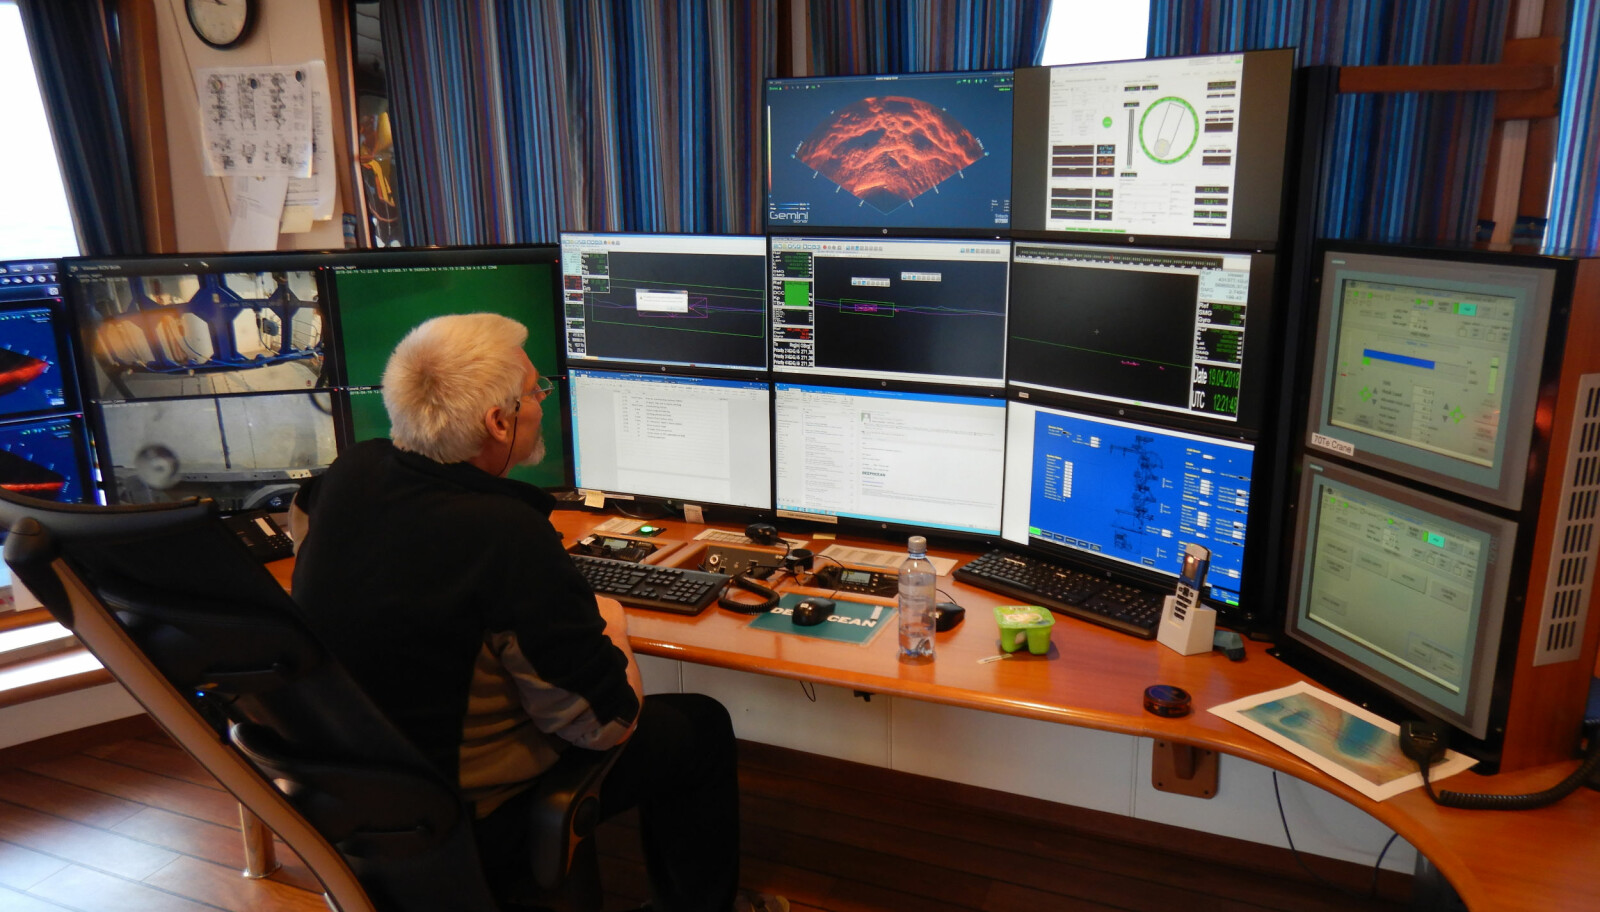 <b>FULL OVERSIKT:</b> Shift-superviser Svein Ove Nilsen styrer operasjonene via skjermer som viser bilder fra alt som skjer.